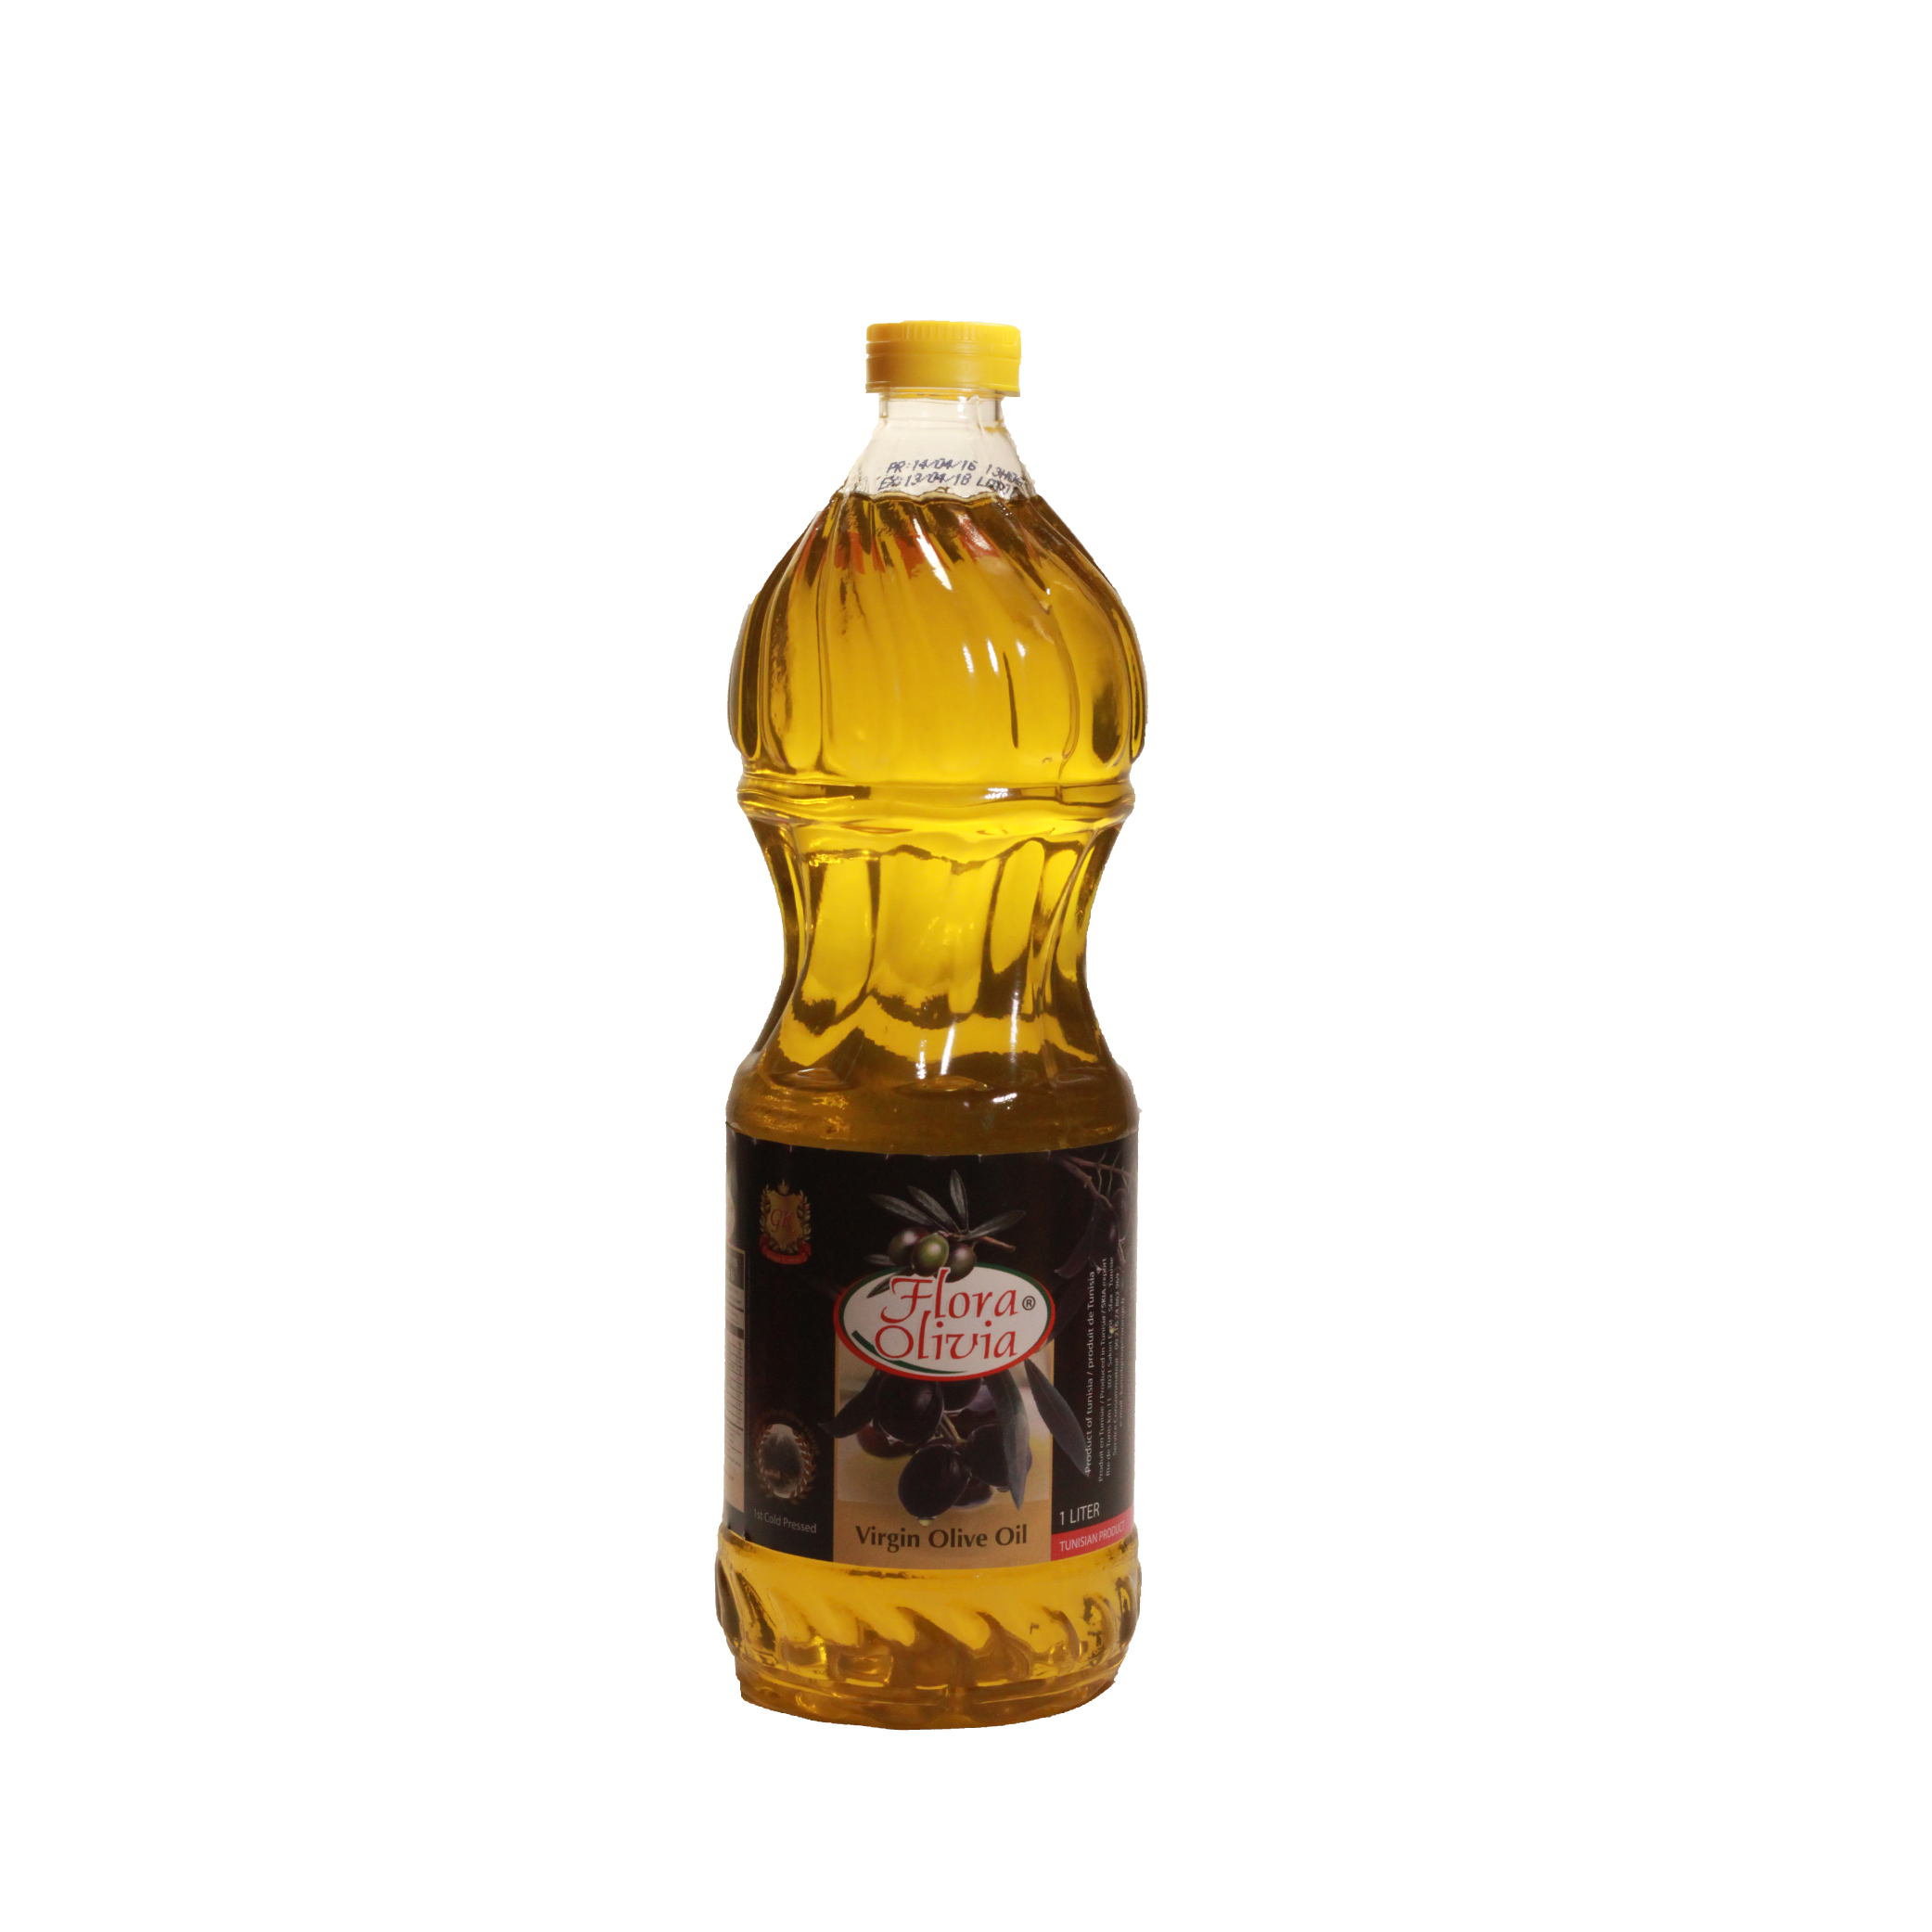 flora-olivia-huile-dolive-vierge-1l